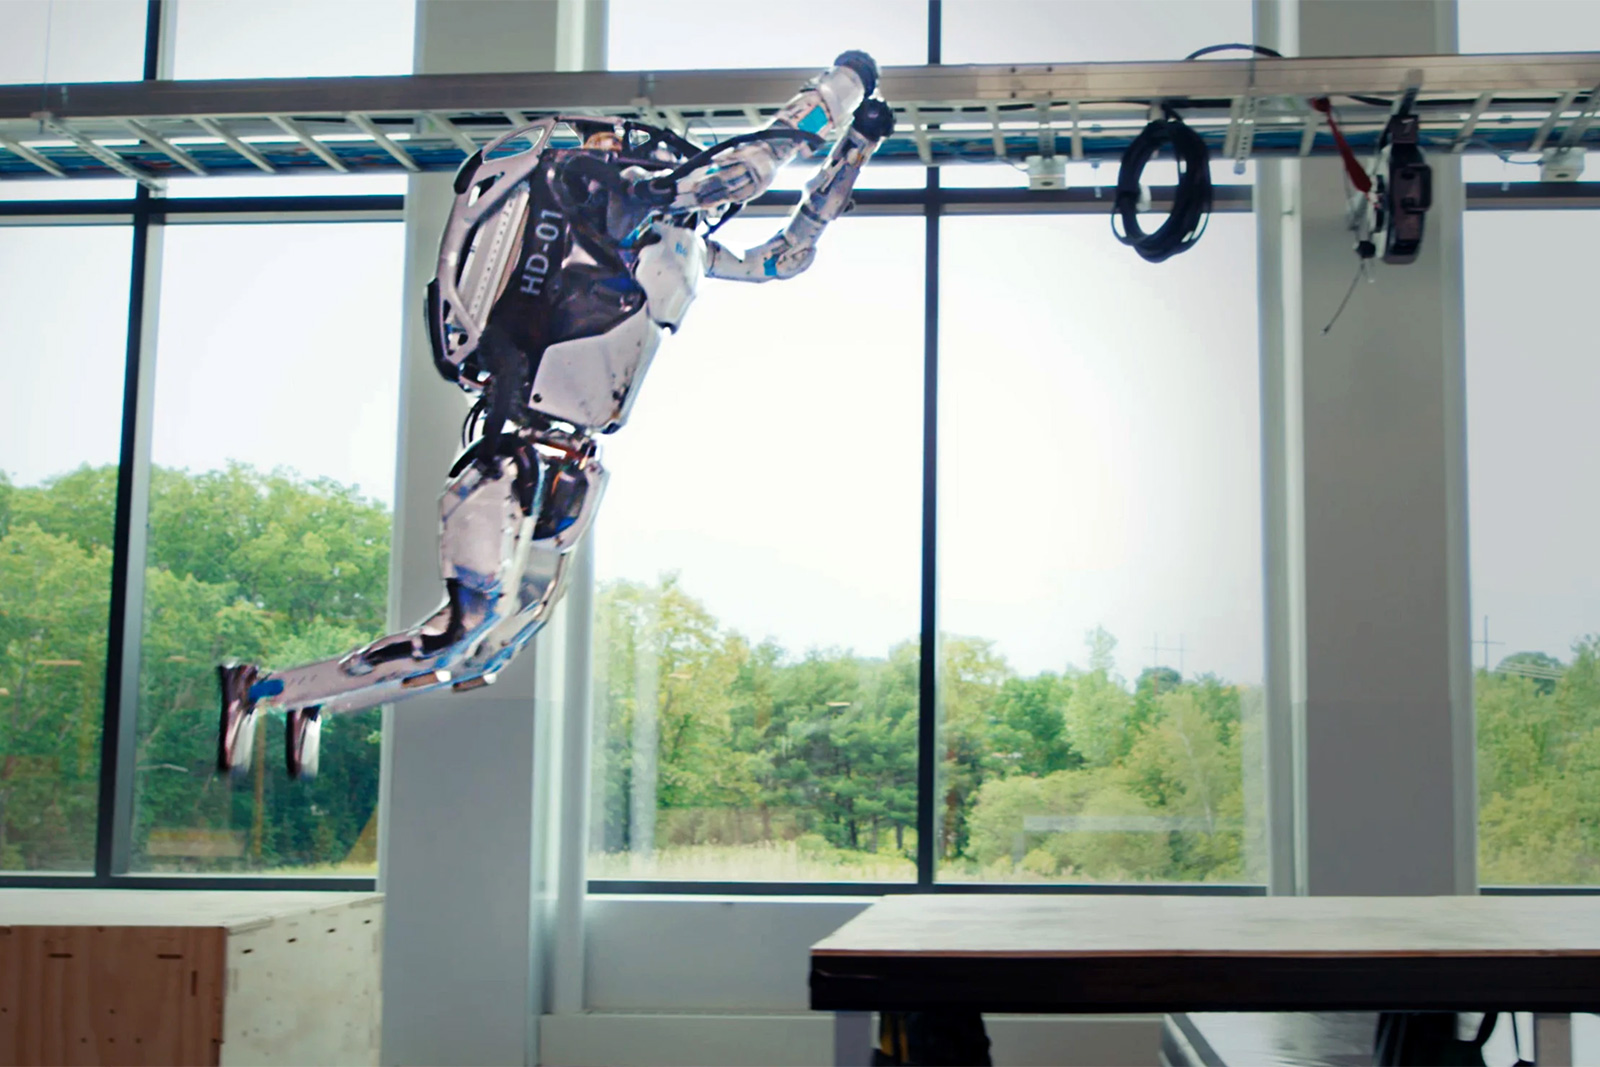 Boston Dynamics Atlas robot performing a parkour leap